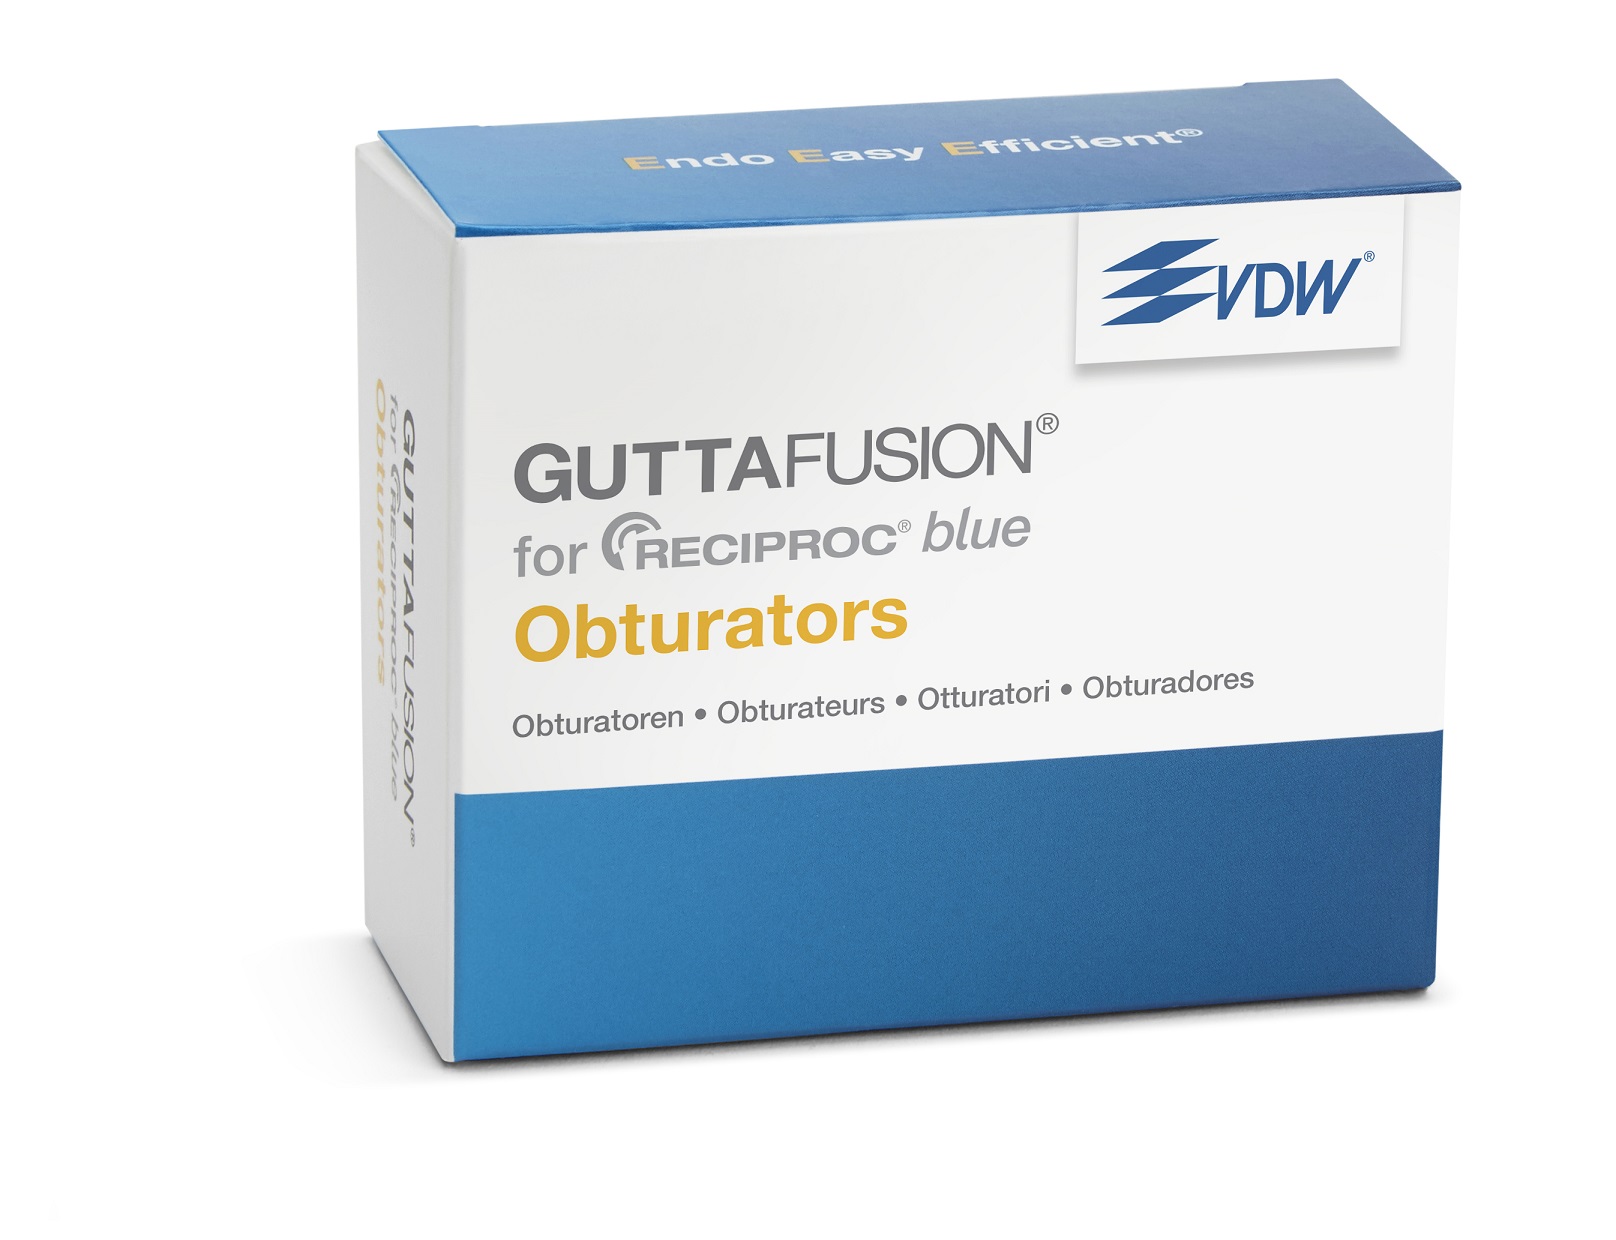 Guttafusion Reciproc Blue